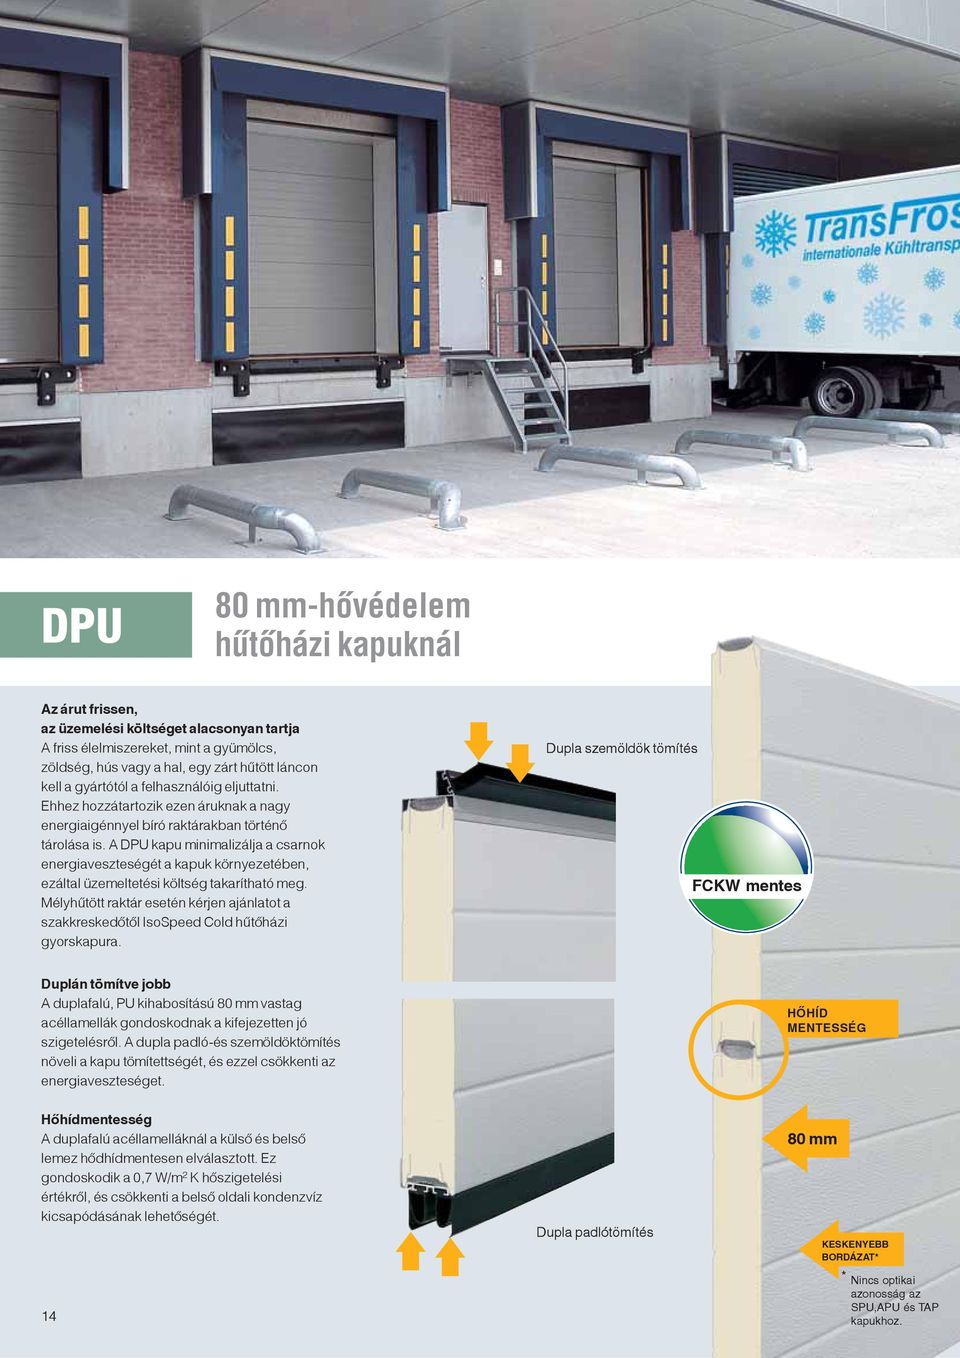 A DPU kapu minimalizálja a csarnok energiaveszteségét a kapuk környezetében, ezáltal üzemeltetési költség takarítható meg.